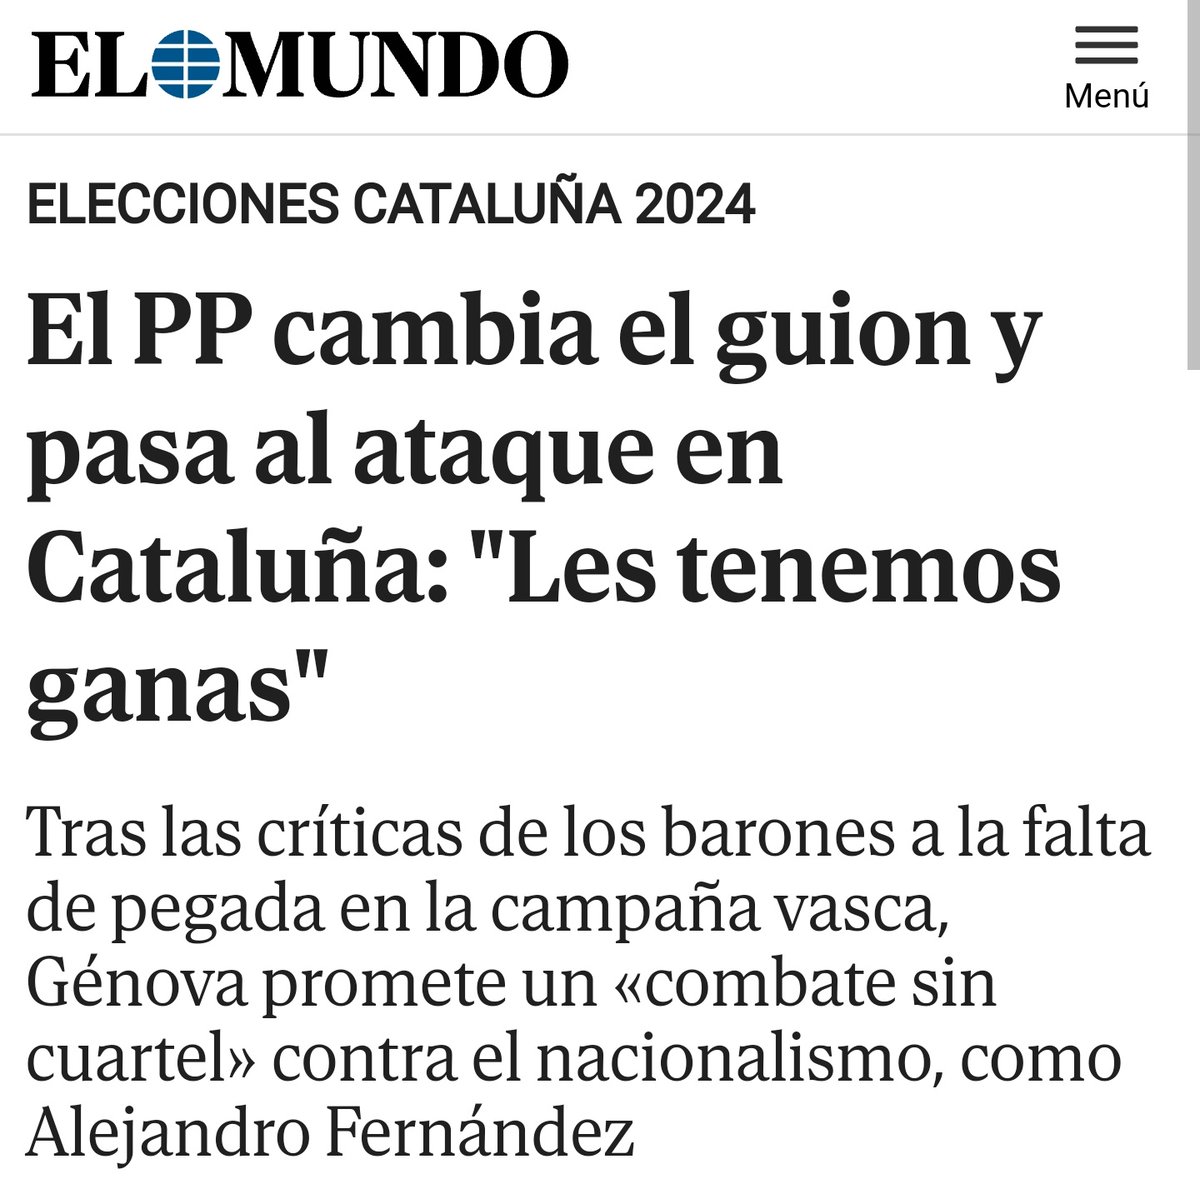 Dicen que ahora, después de 40 años, van a 'combatir sin cuartel' al nacionalismo en Cataluña... Lo tenían más fácil empezando por Galicia.